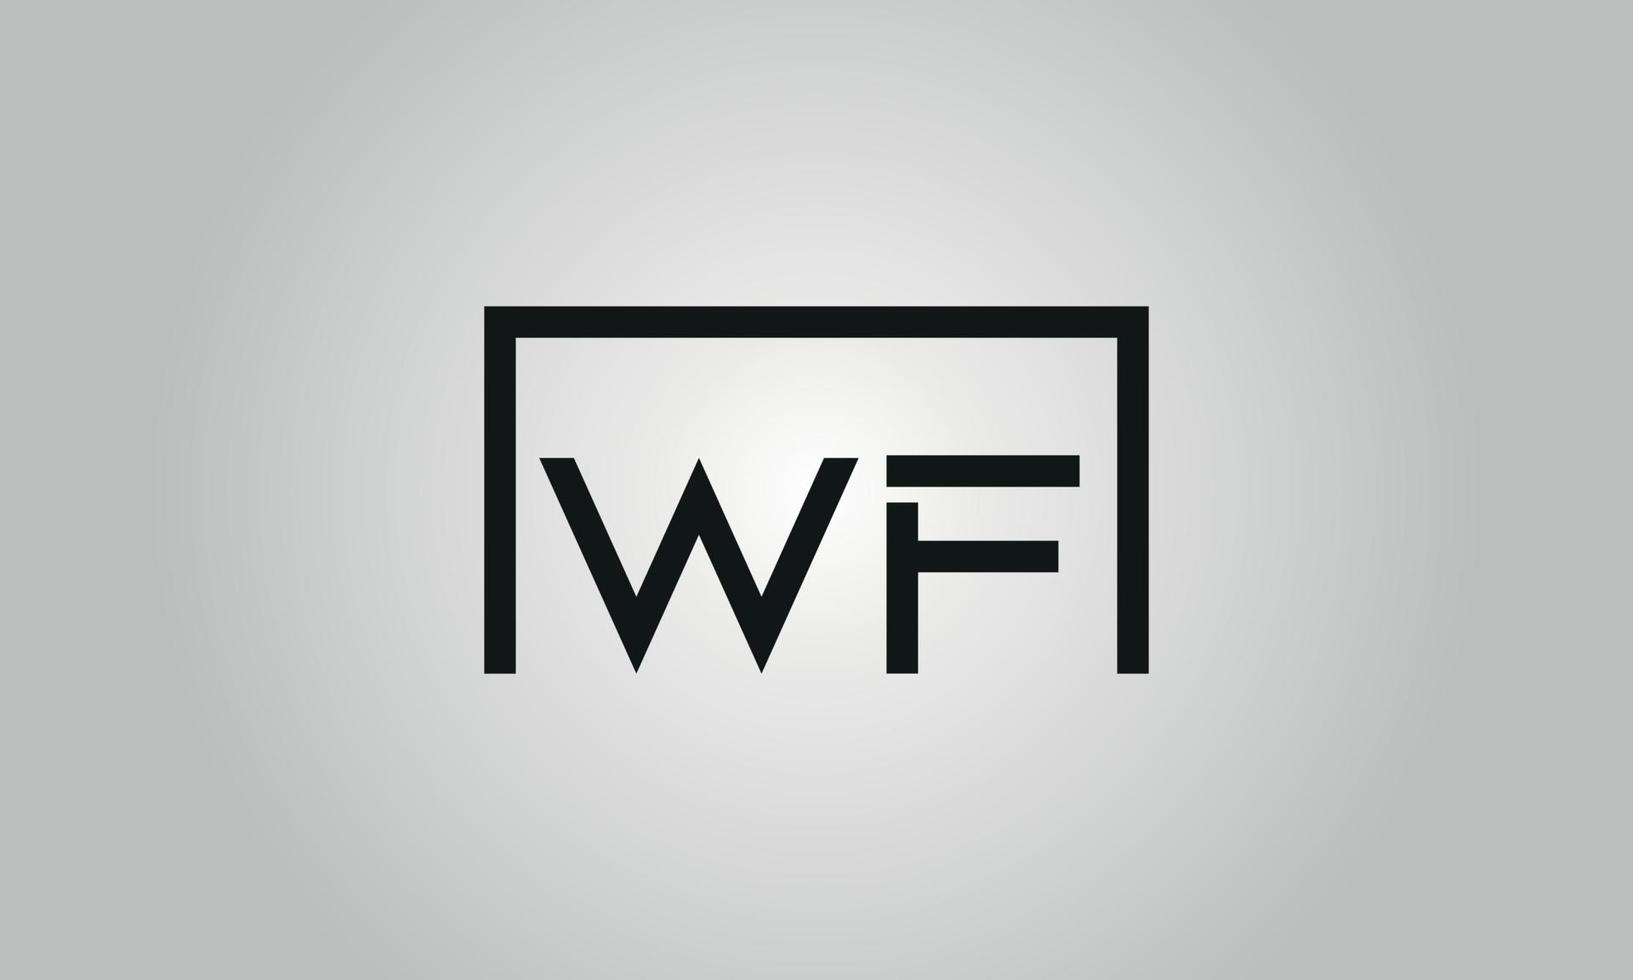 brief wf logo ontwerp. wf logo met plein vorm in zwart kleuren vector vrij vector sjabloon.